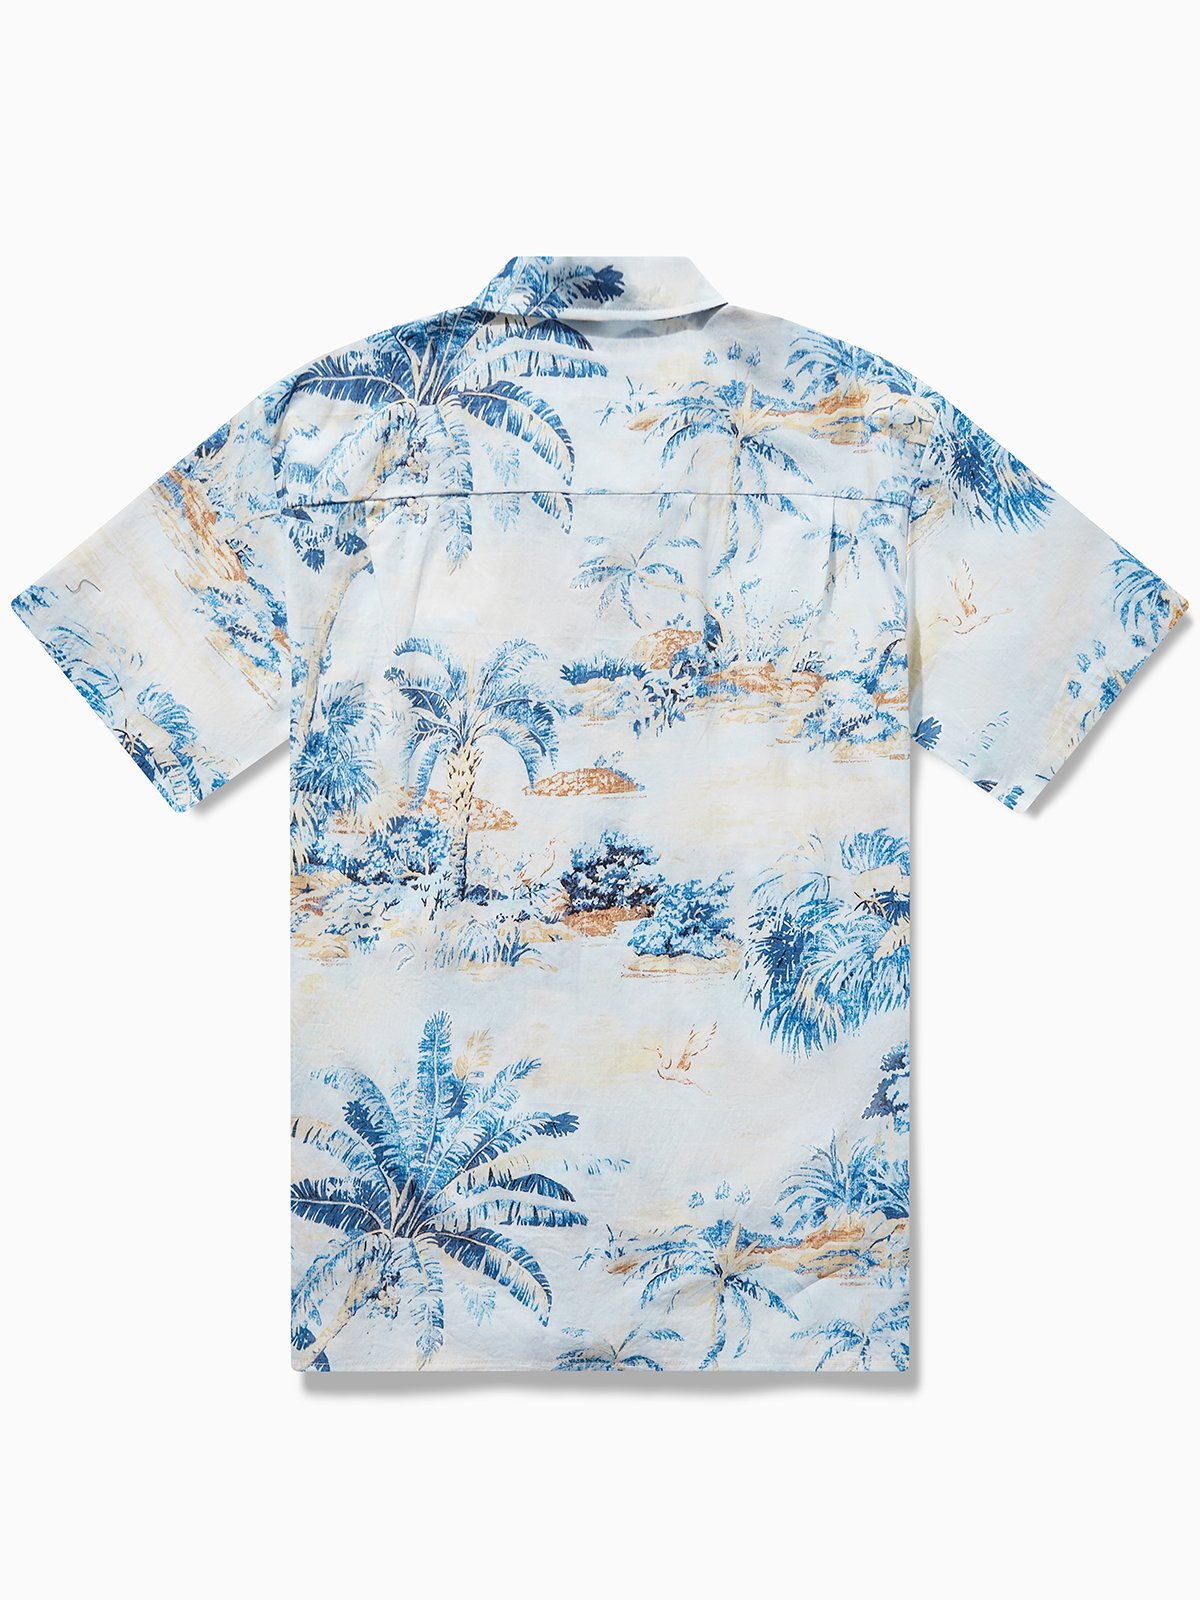 Hardaddy® Cotton Hawaii Wonderland Aloha Shirt | hardaddy